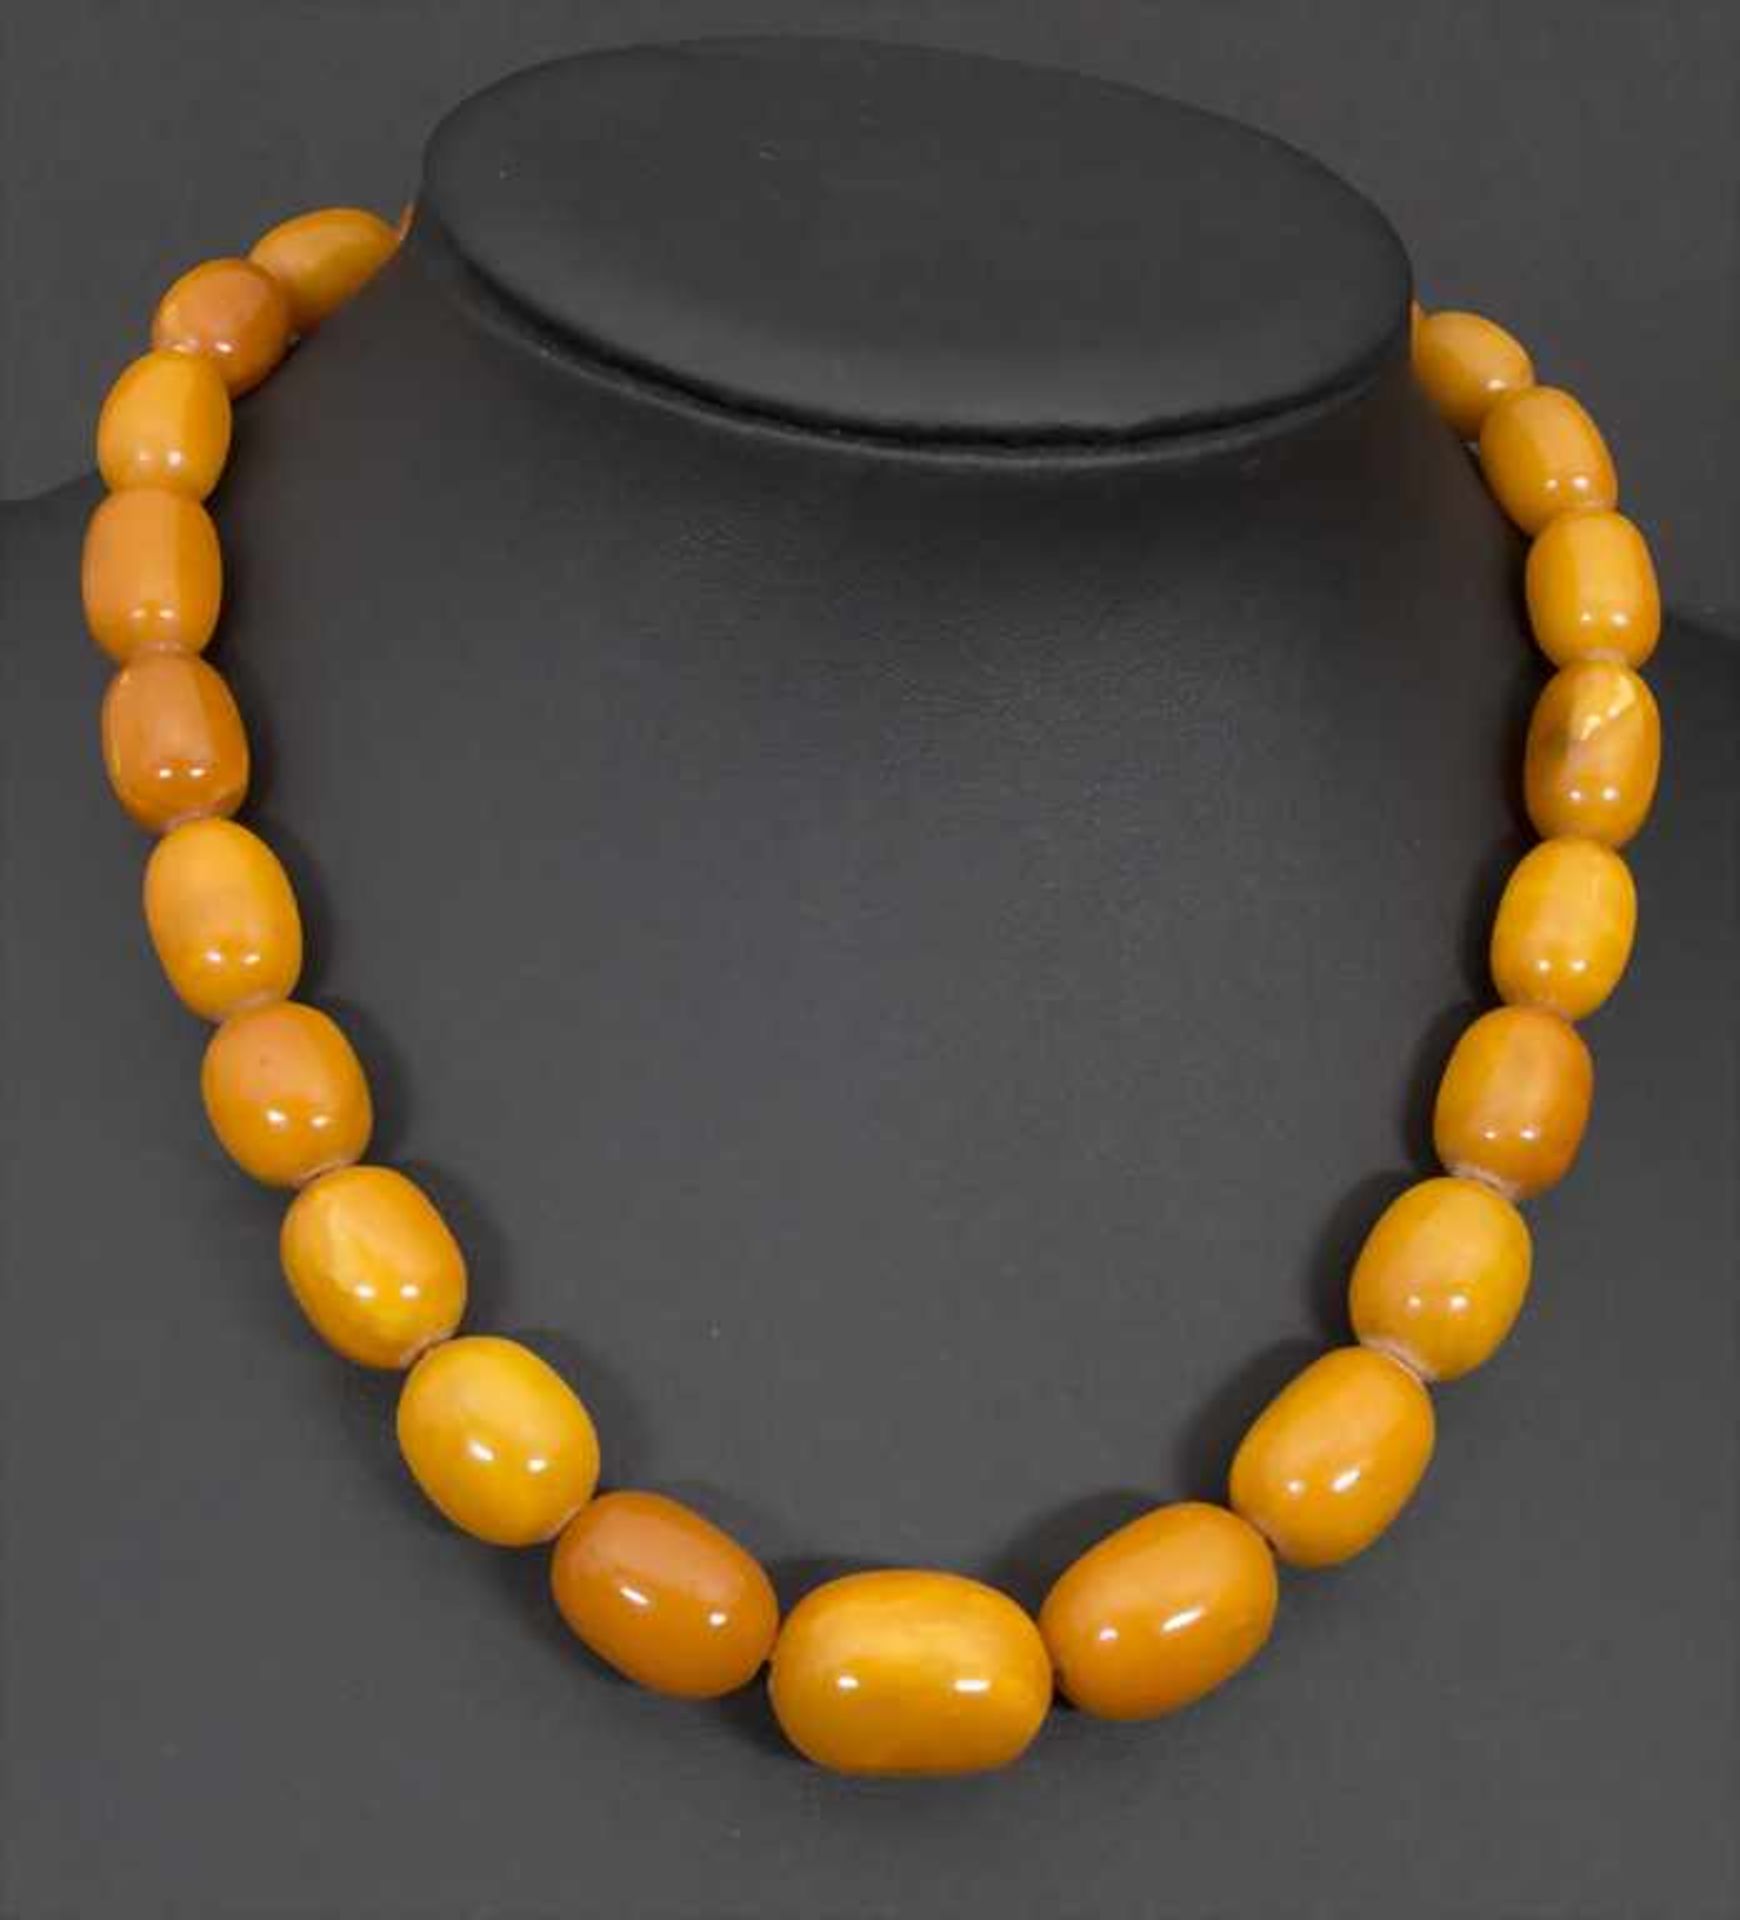 Bernsteinkette / Oliven Kette / An amber olives chain